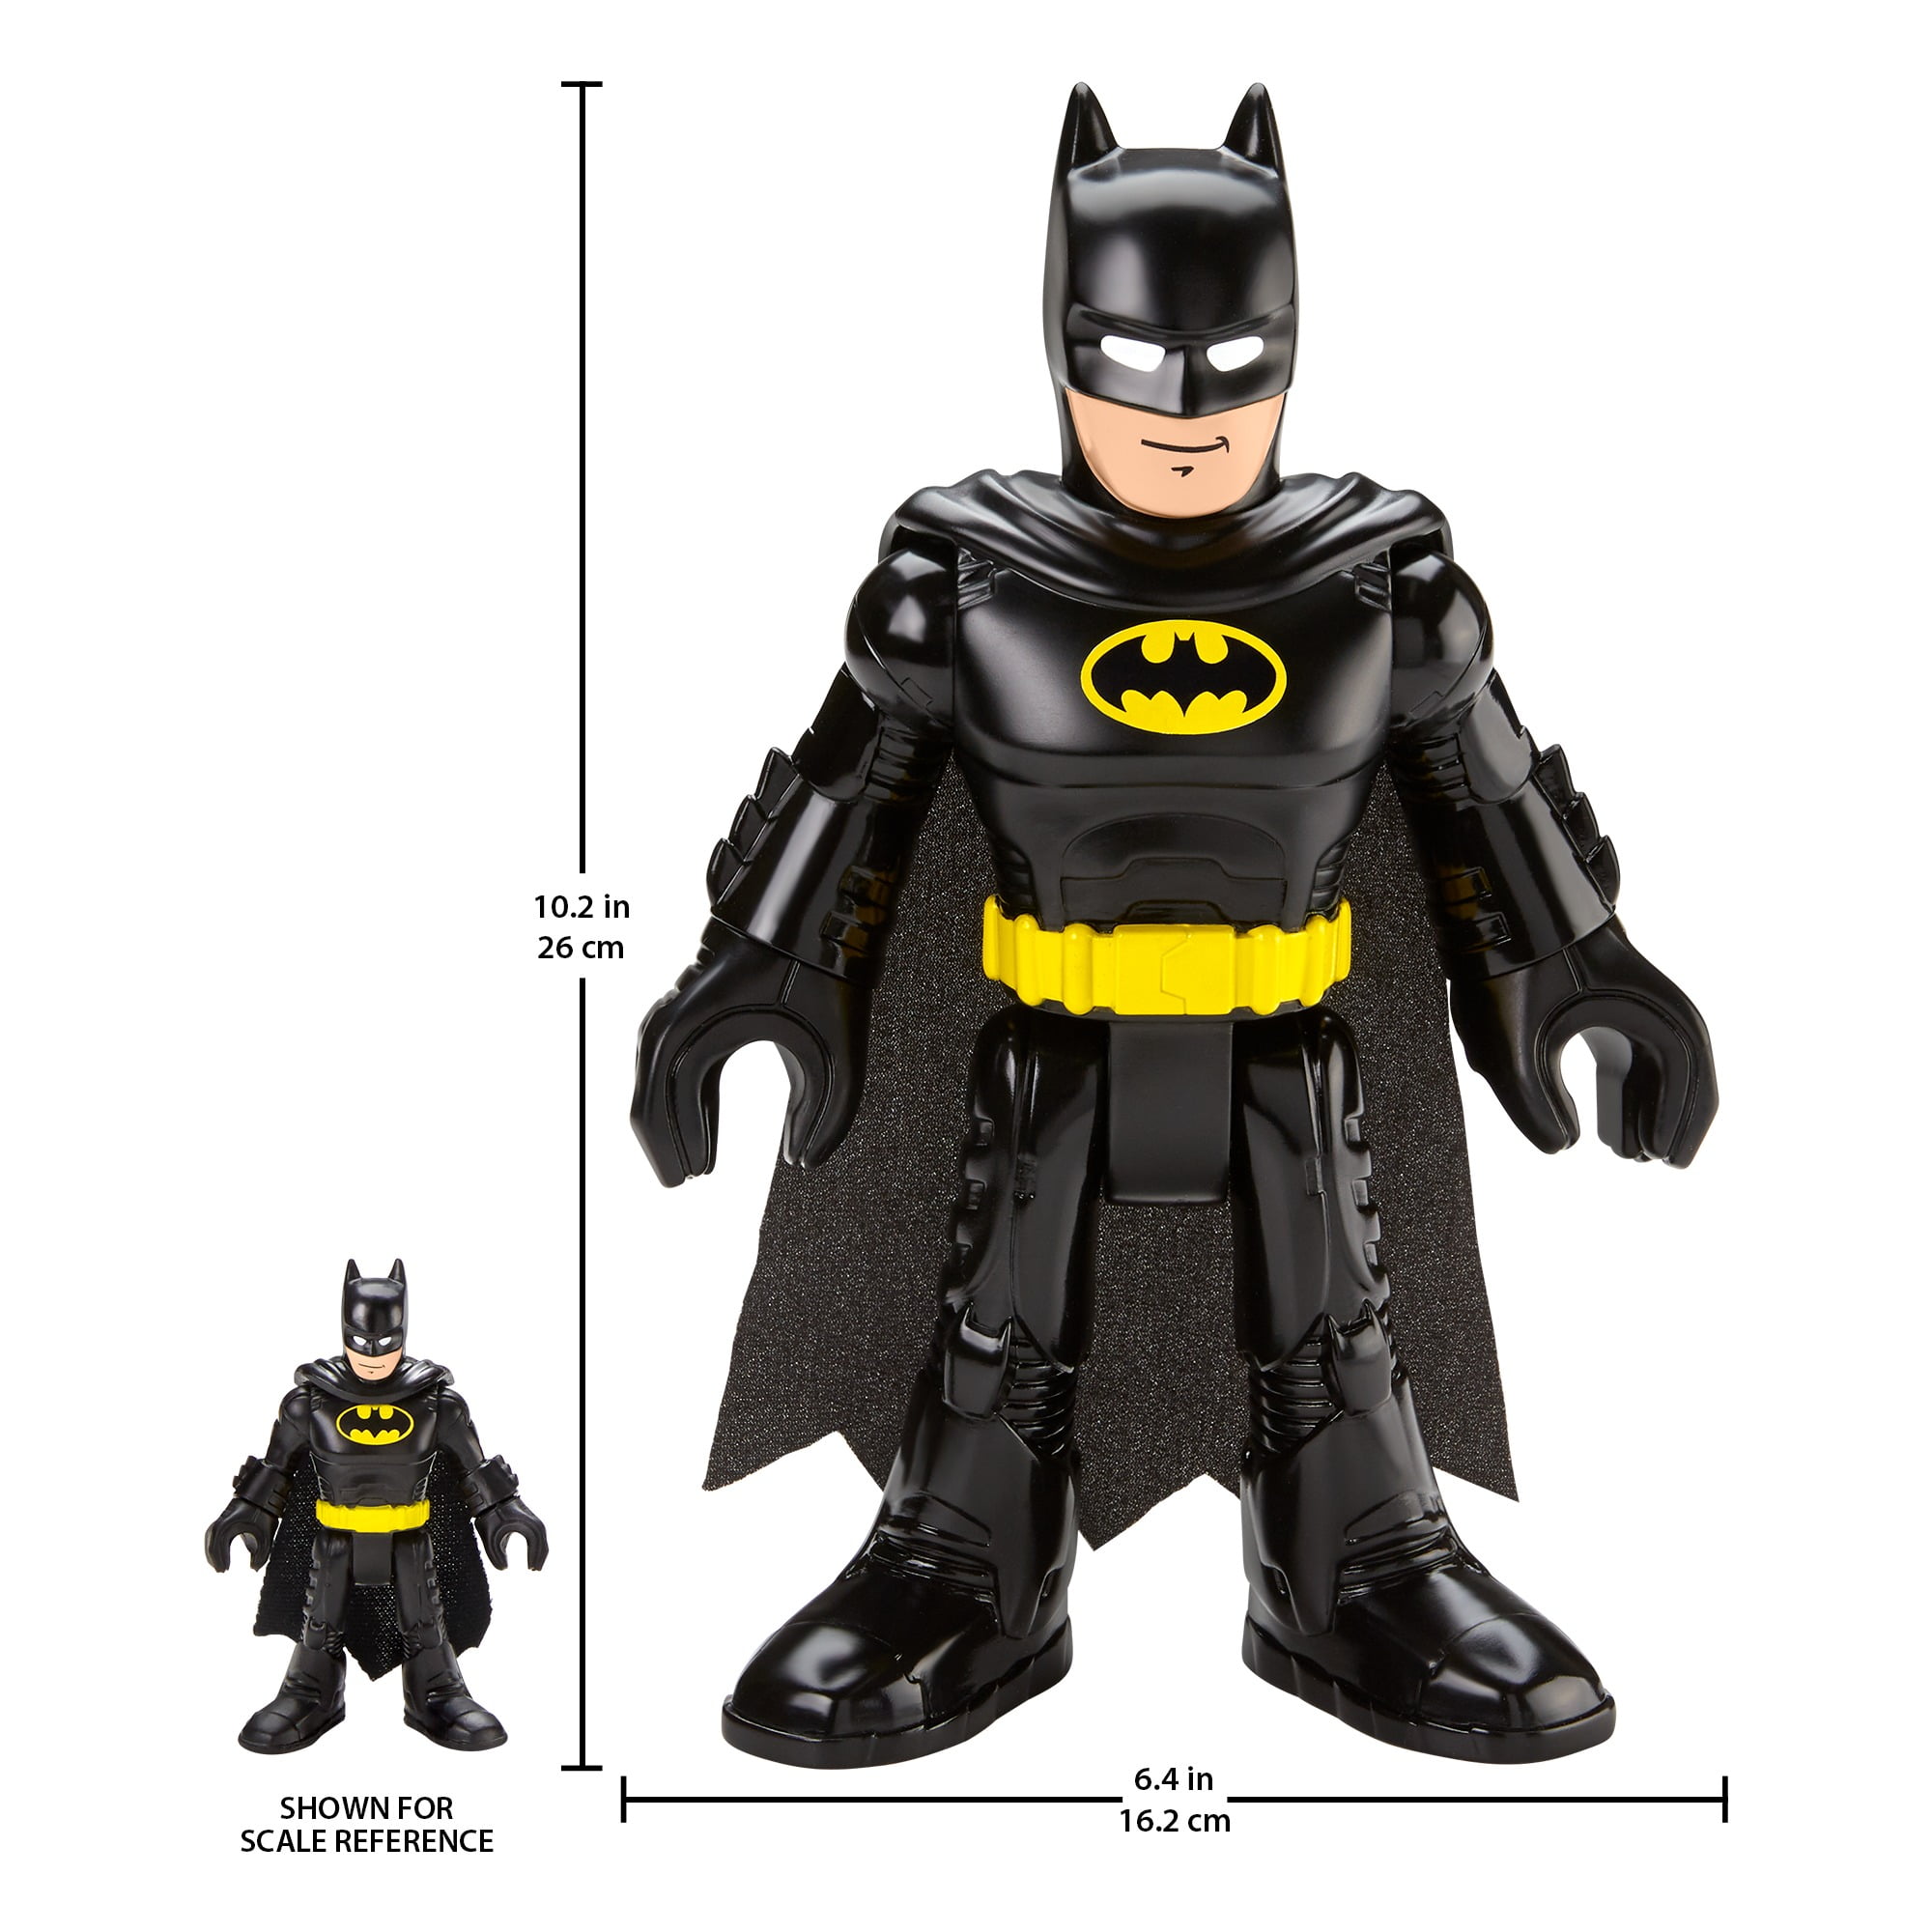 lot of 3 Fisher-Price Imaginext DC Super Friends batman action figure 3" 